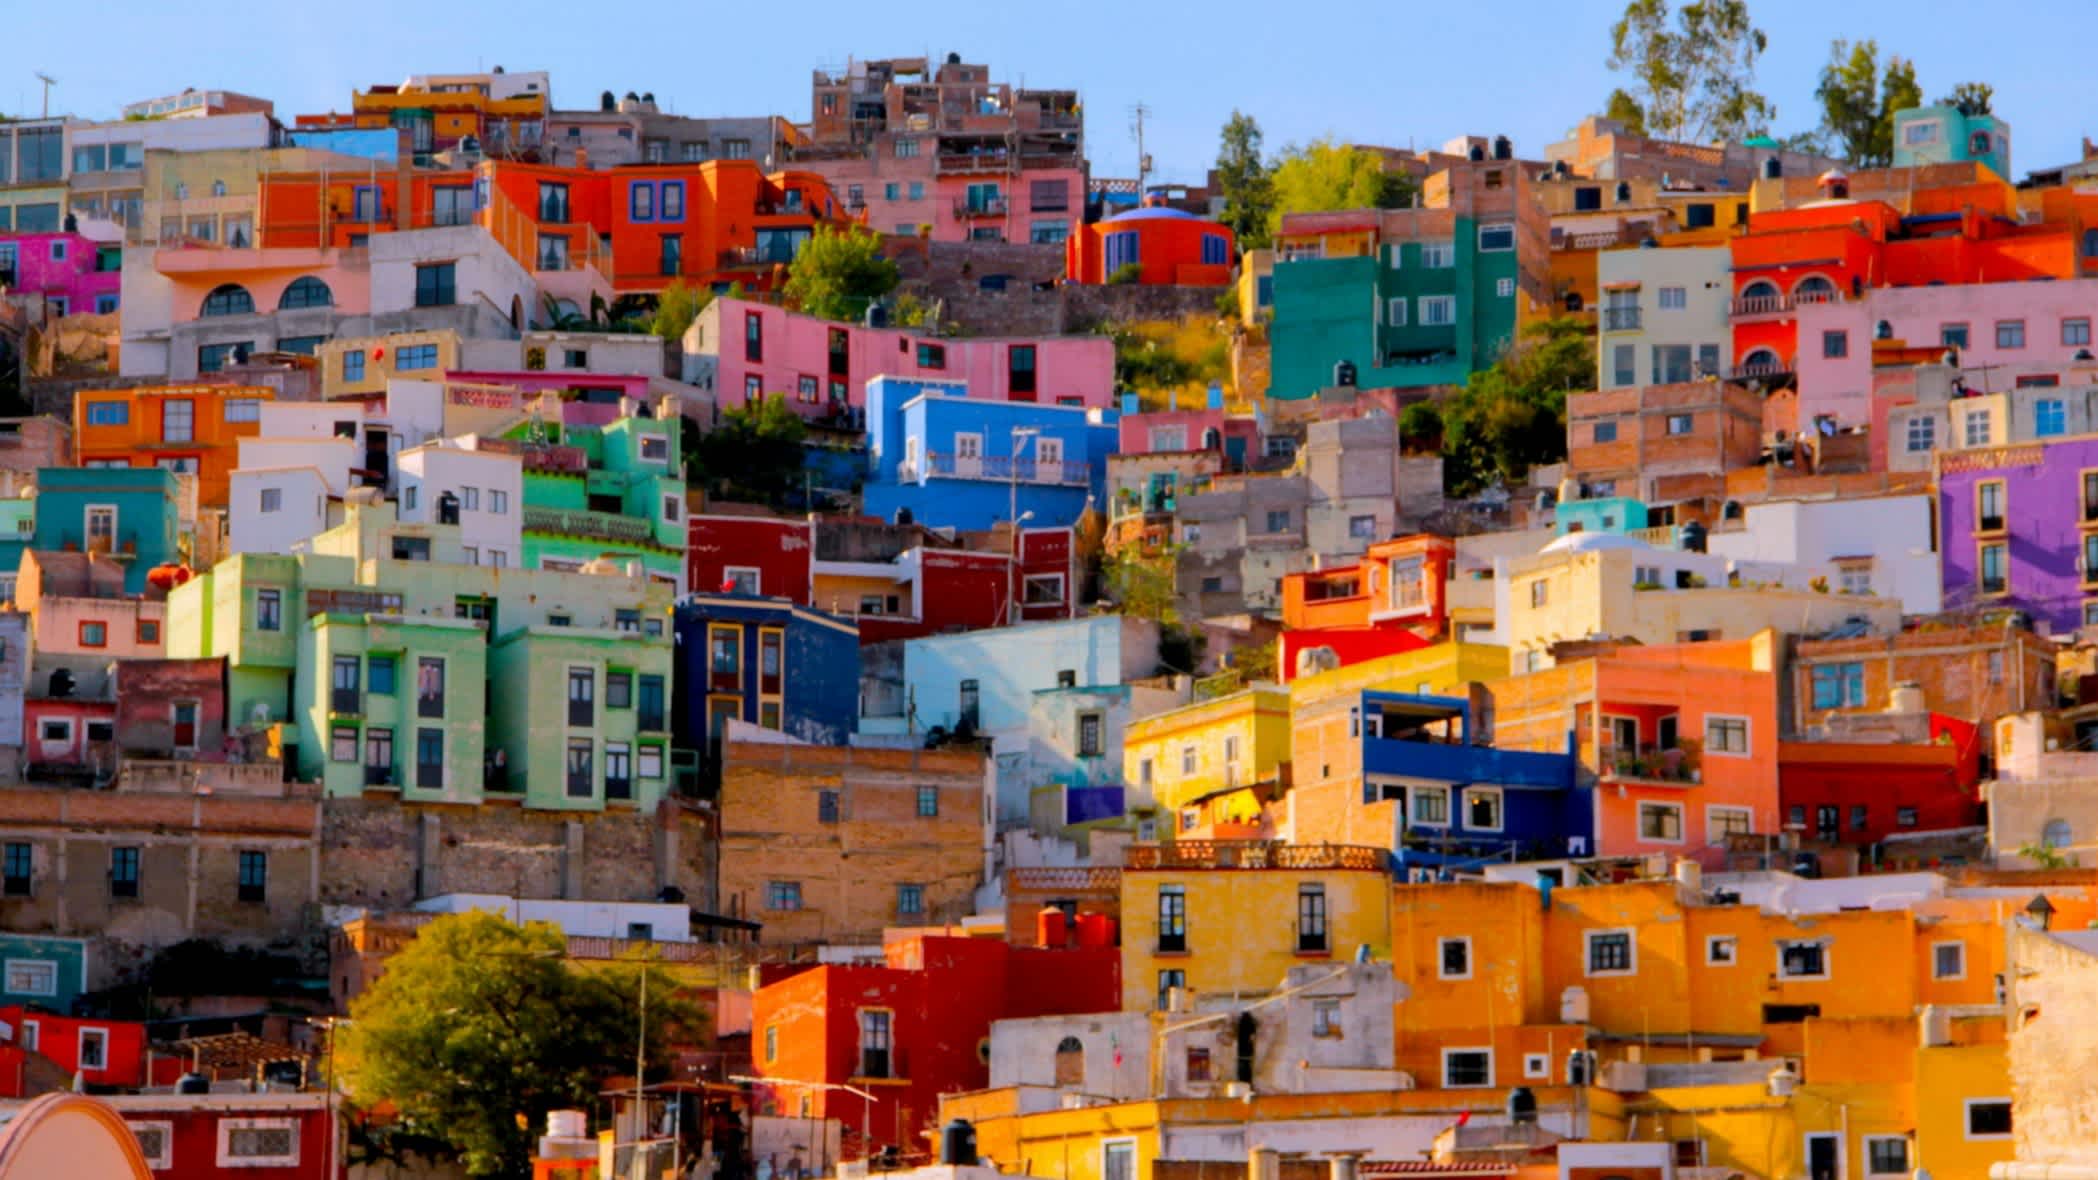 Farbenfrohe Häuser in Guanajuato, Mexiko